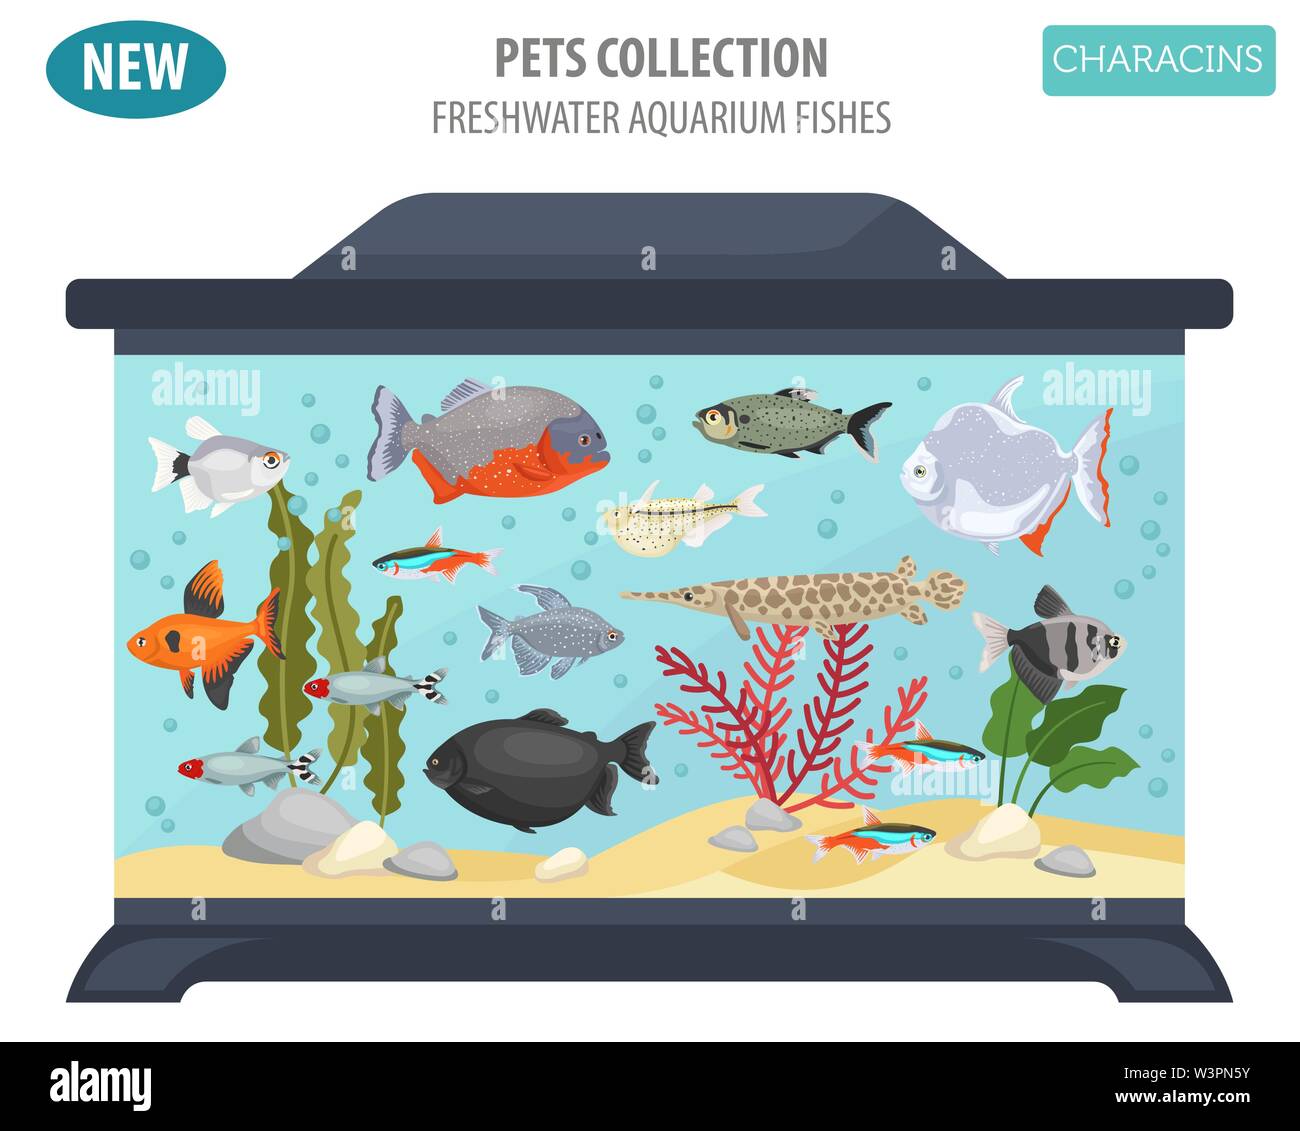 Süßwasser-Aquarium Fische Rassen Icon Set Flat Style isoliert auf Weiss. Salmler. Erstellen Sie eigene Infografik über Haustiere. Vector Illustration Stock Vektor